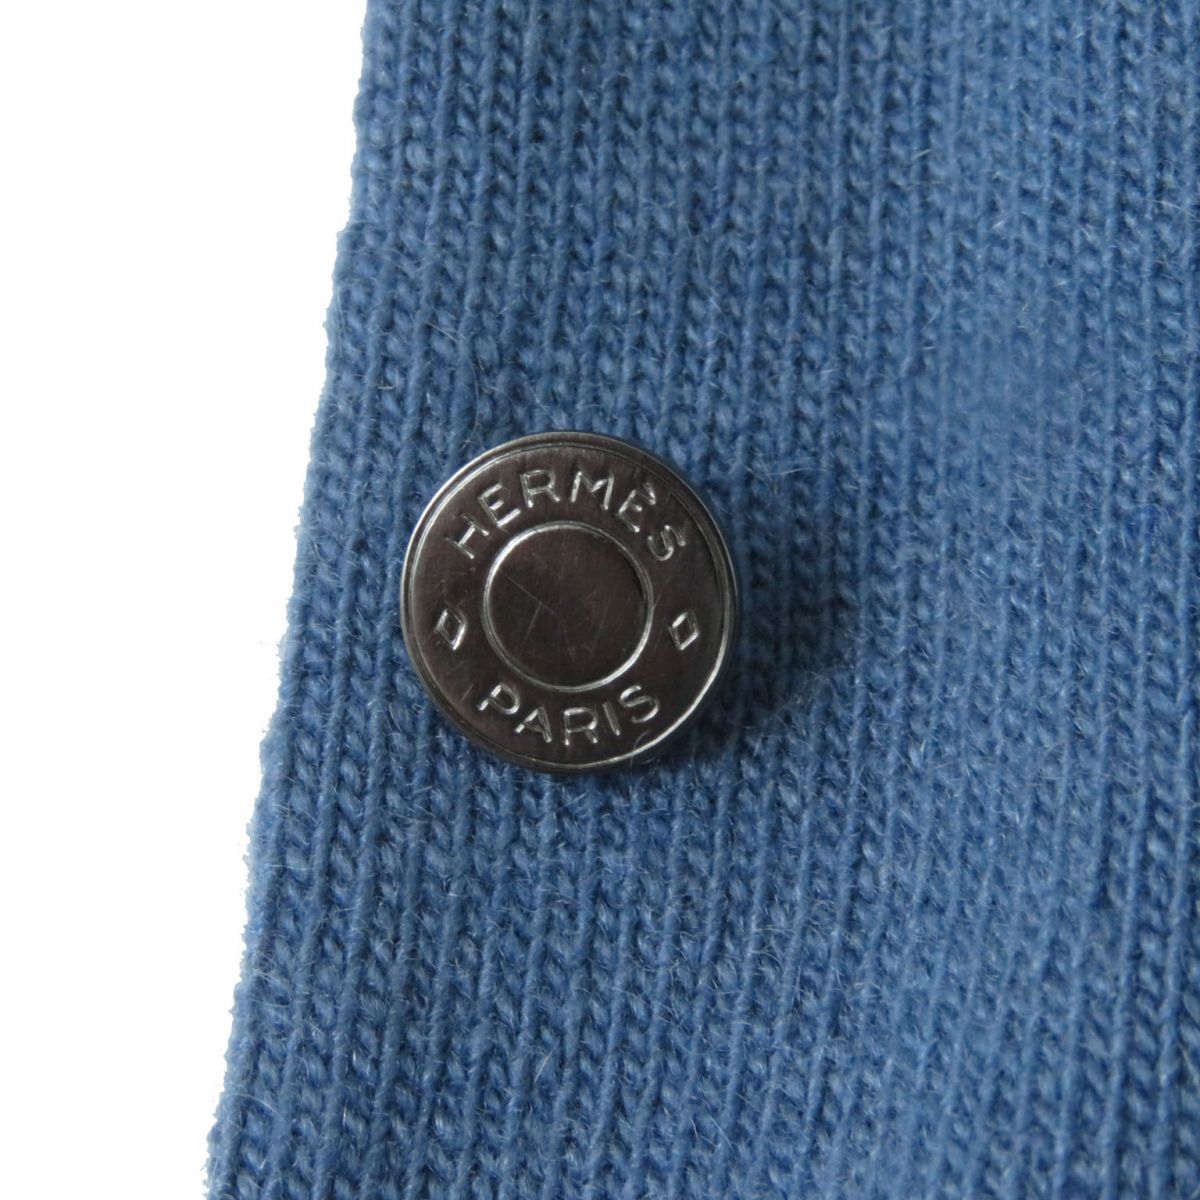  превосходный товар * Scotland производства HERMES Hermes женский Margiela период Serie кнопка имеется кашемир 100% вязаный кардиган голубой XS